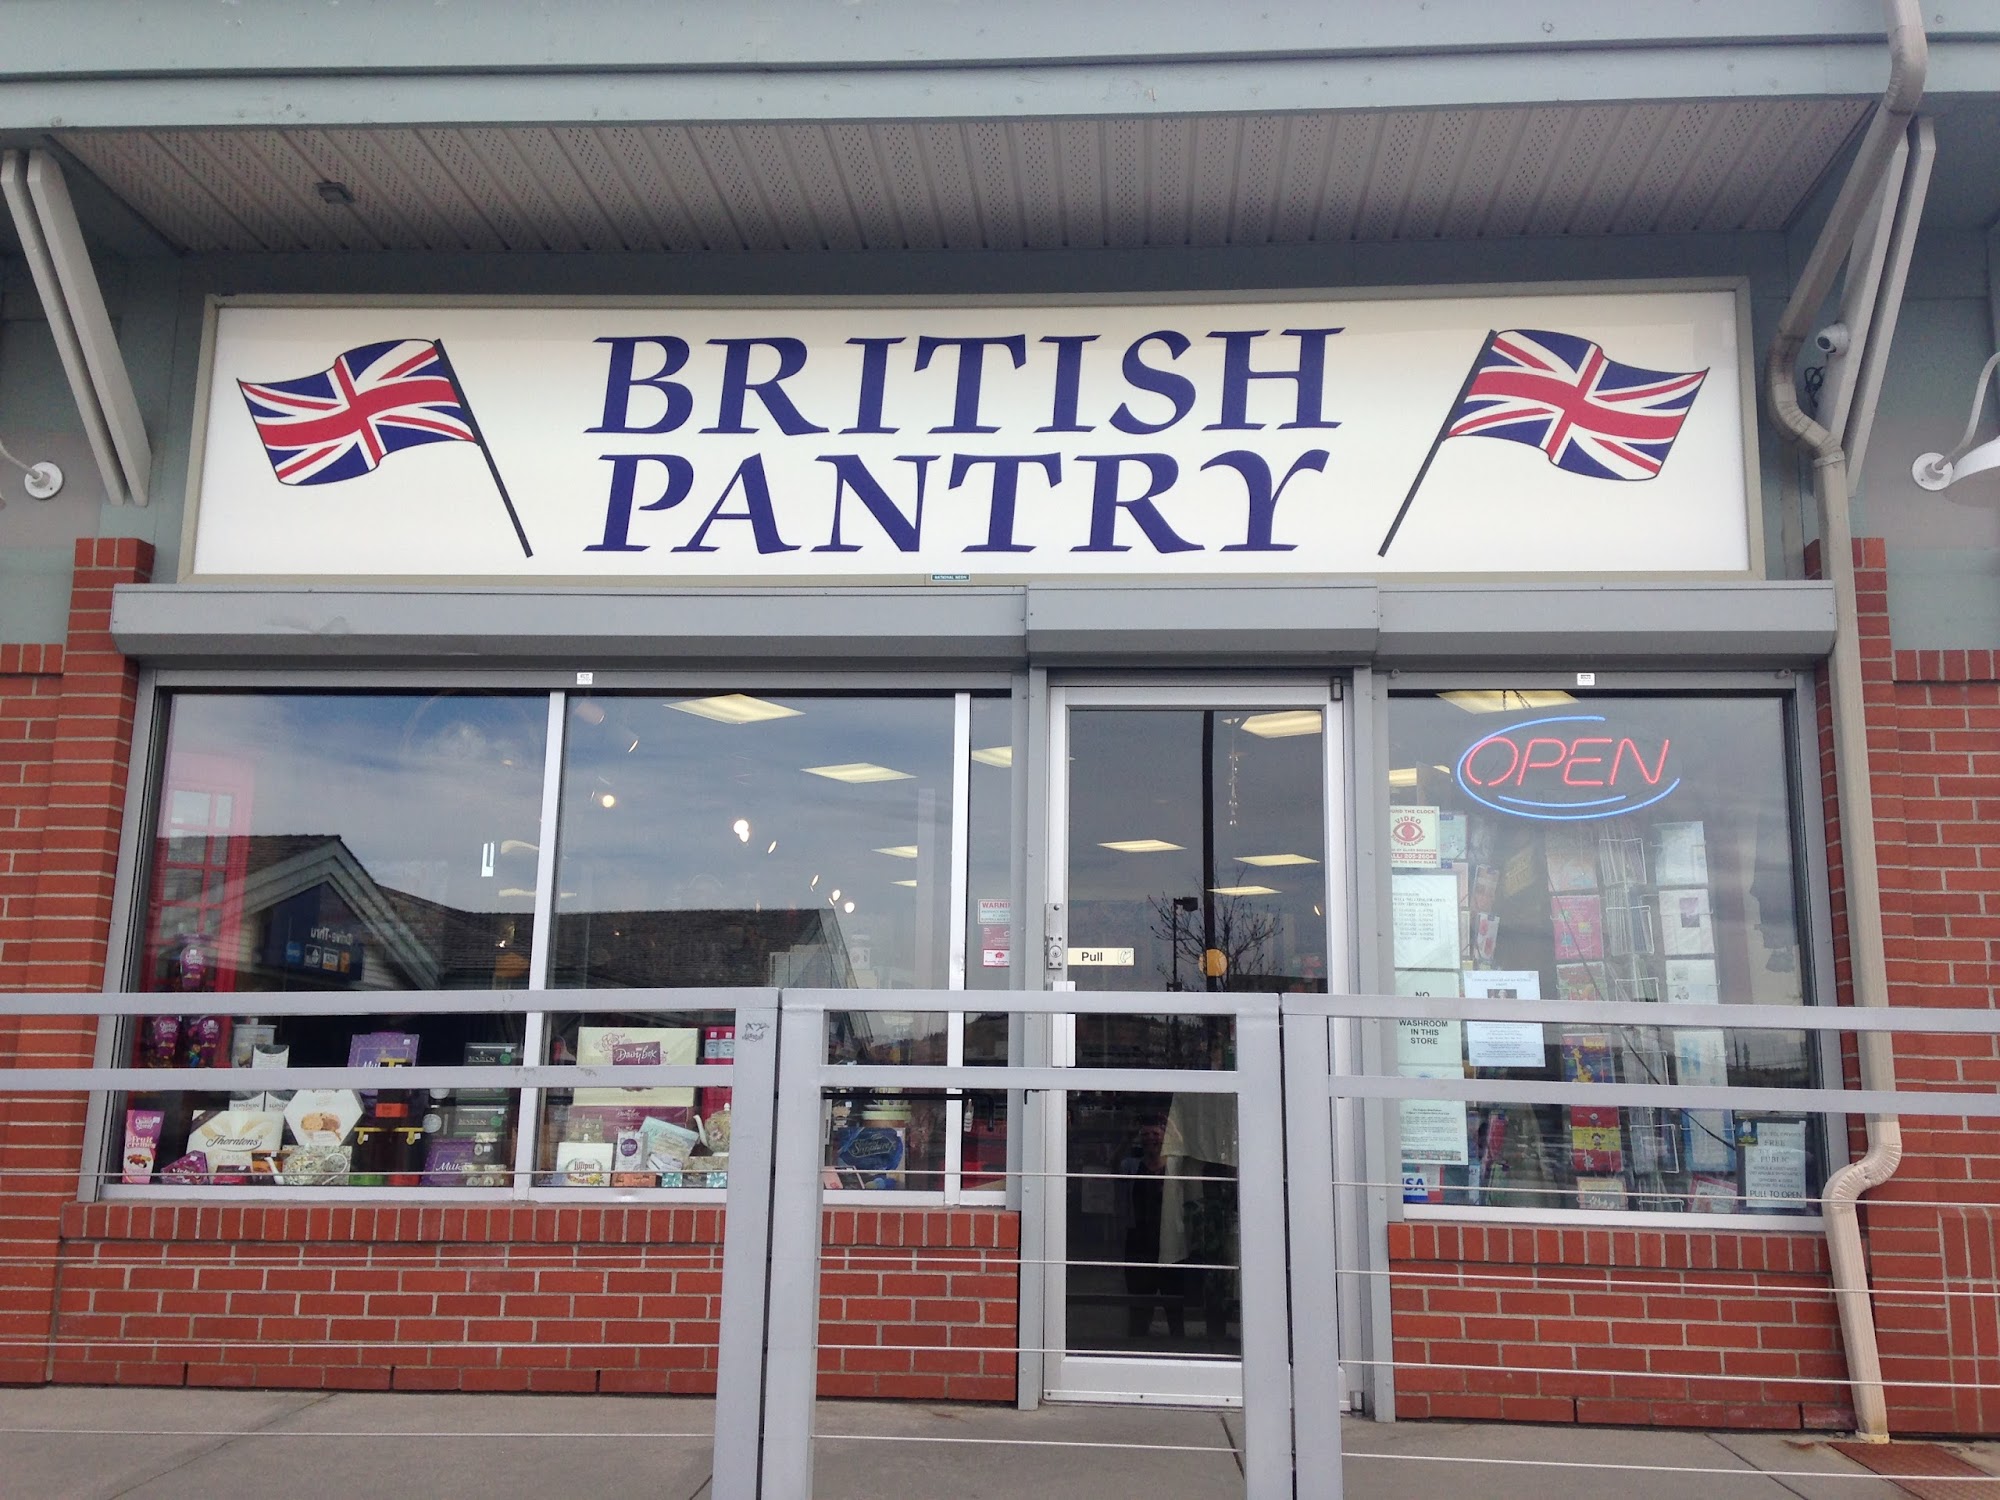 British Pantry